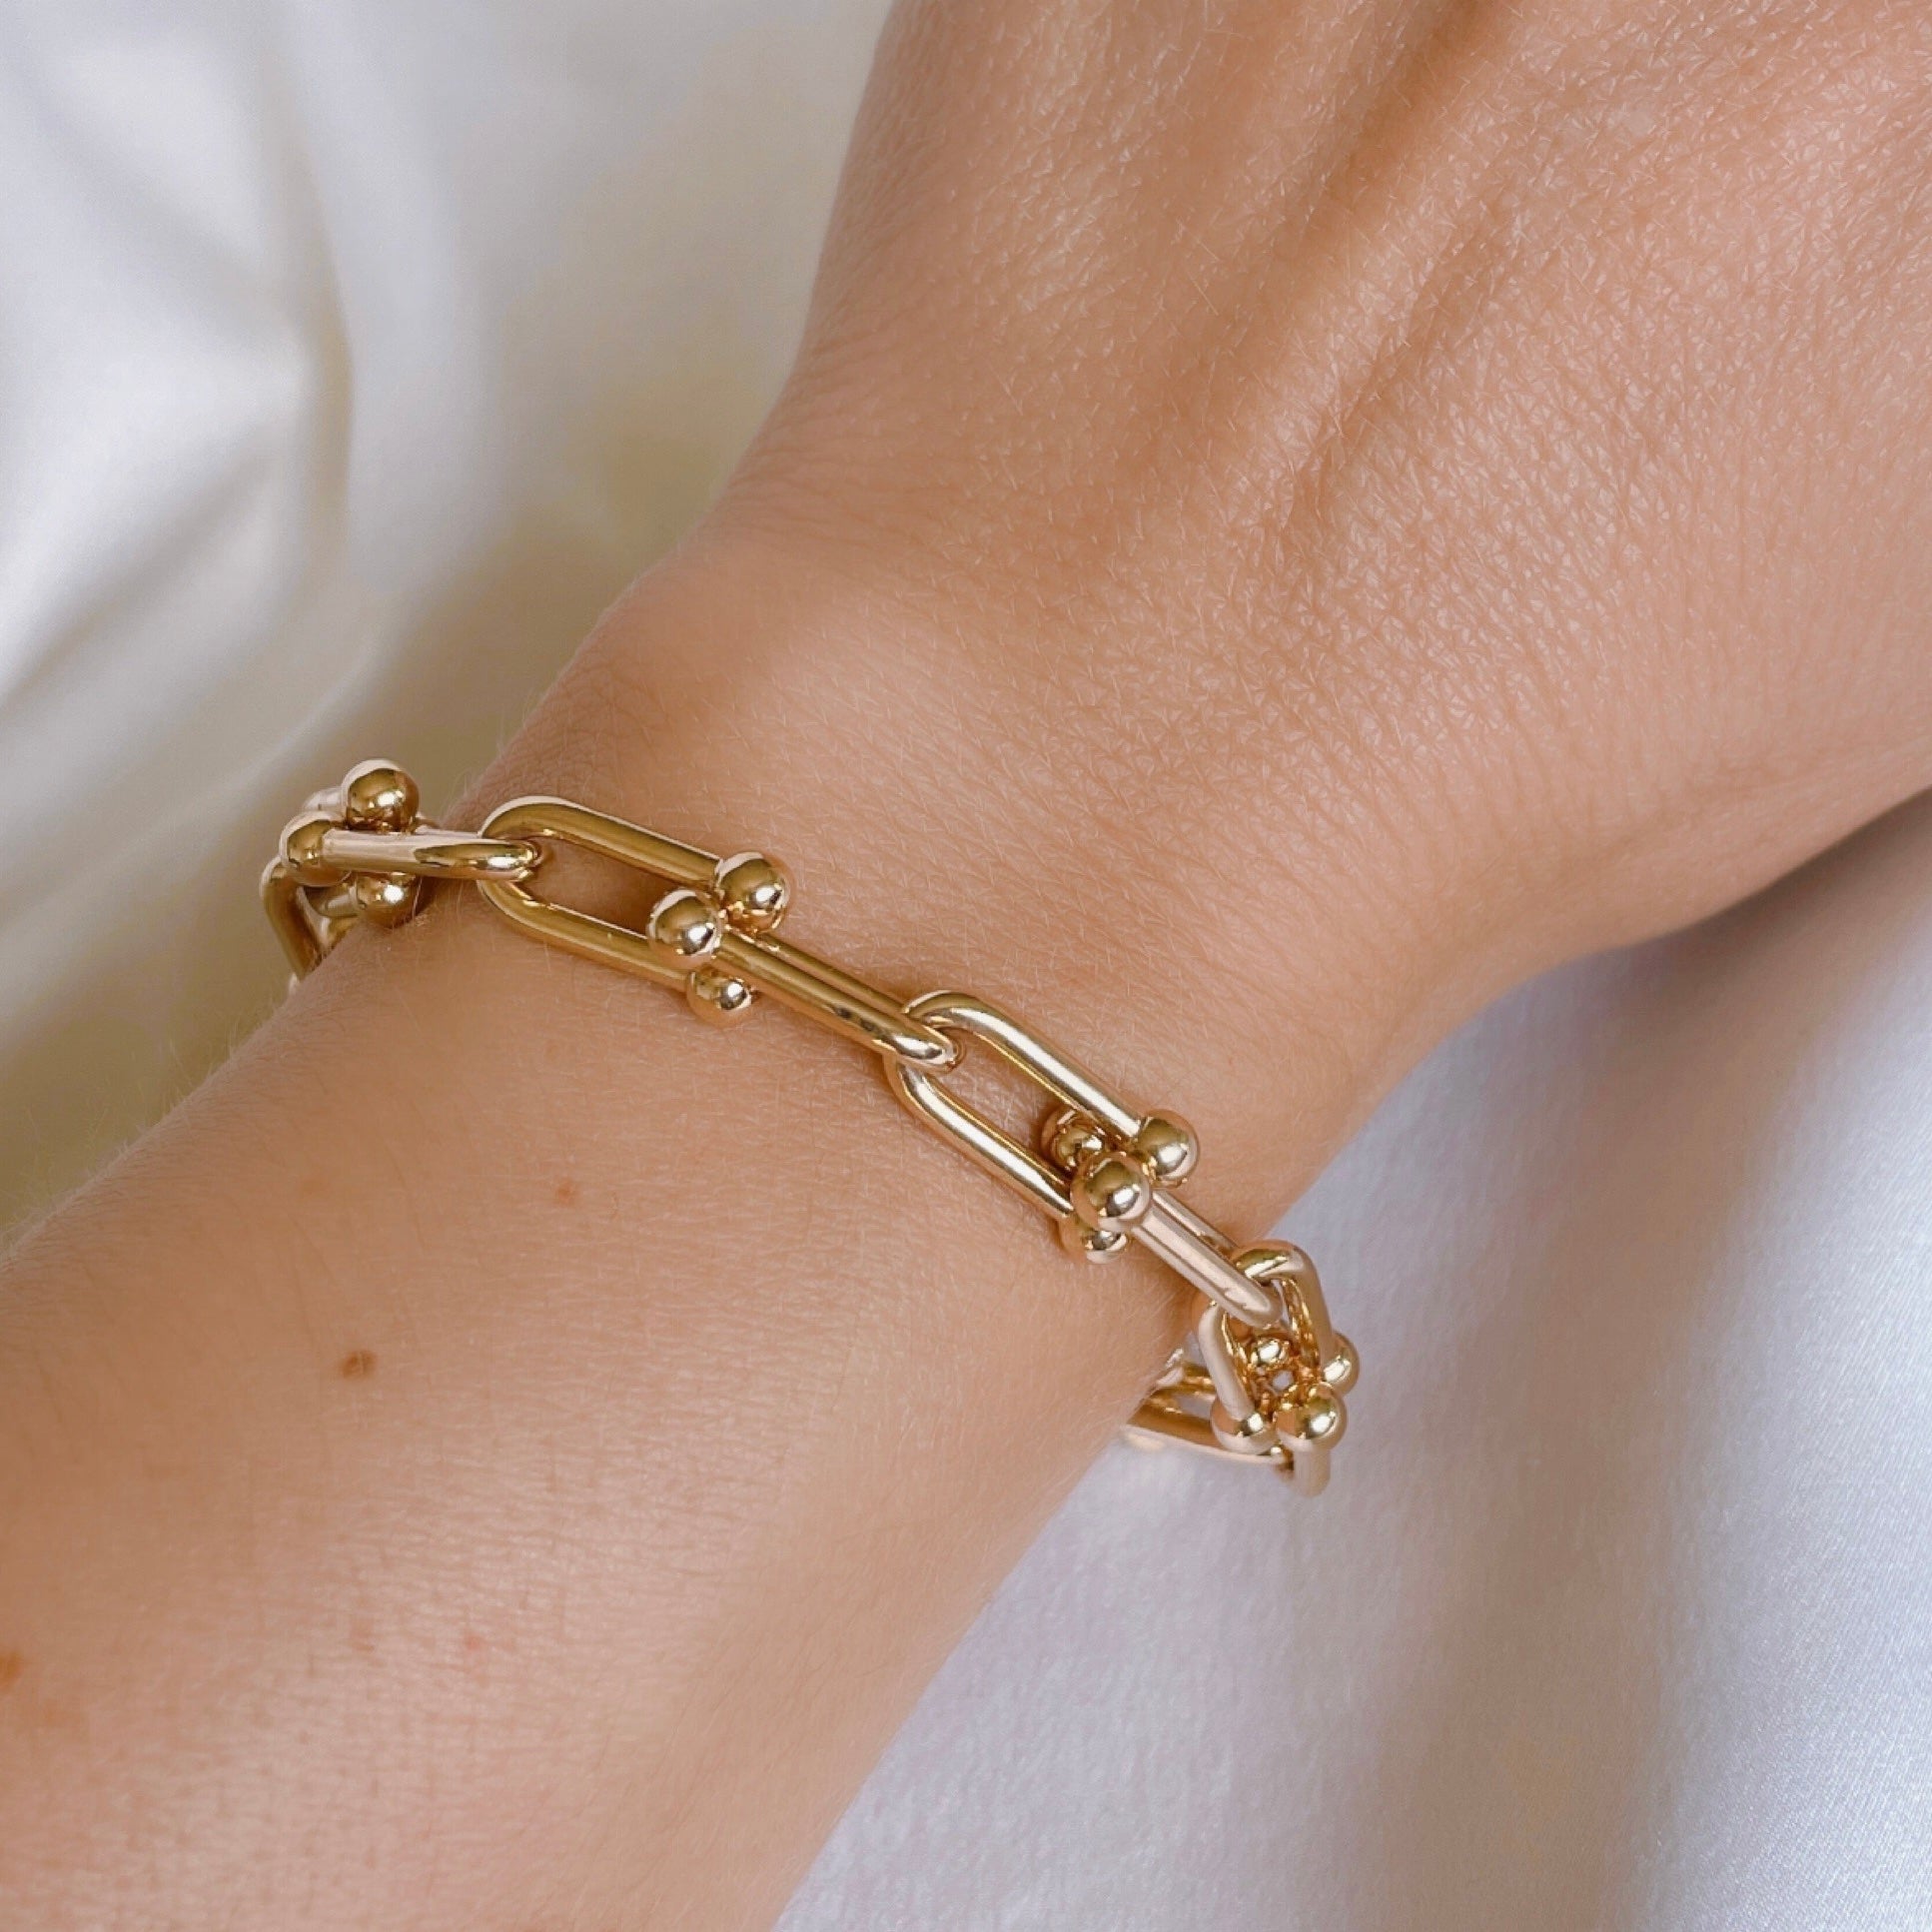 Gold-plated “Link” bracelet